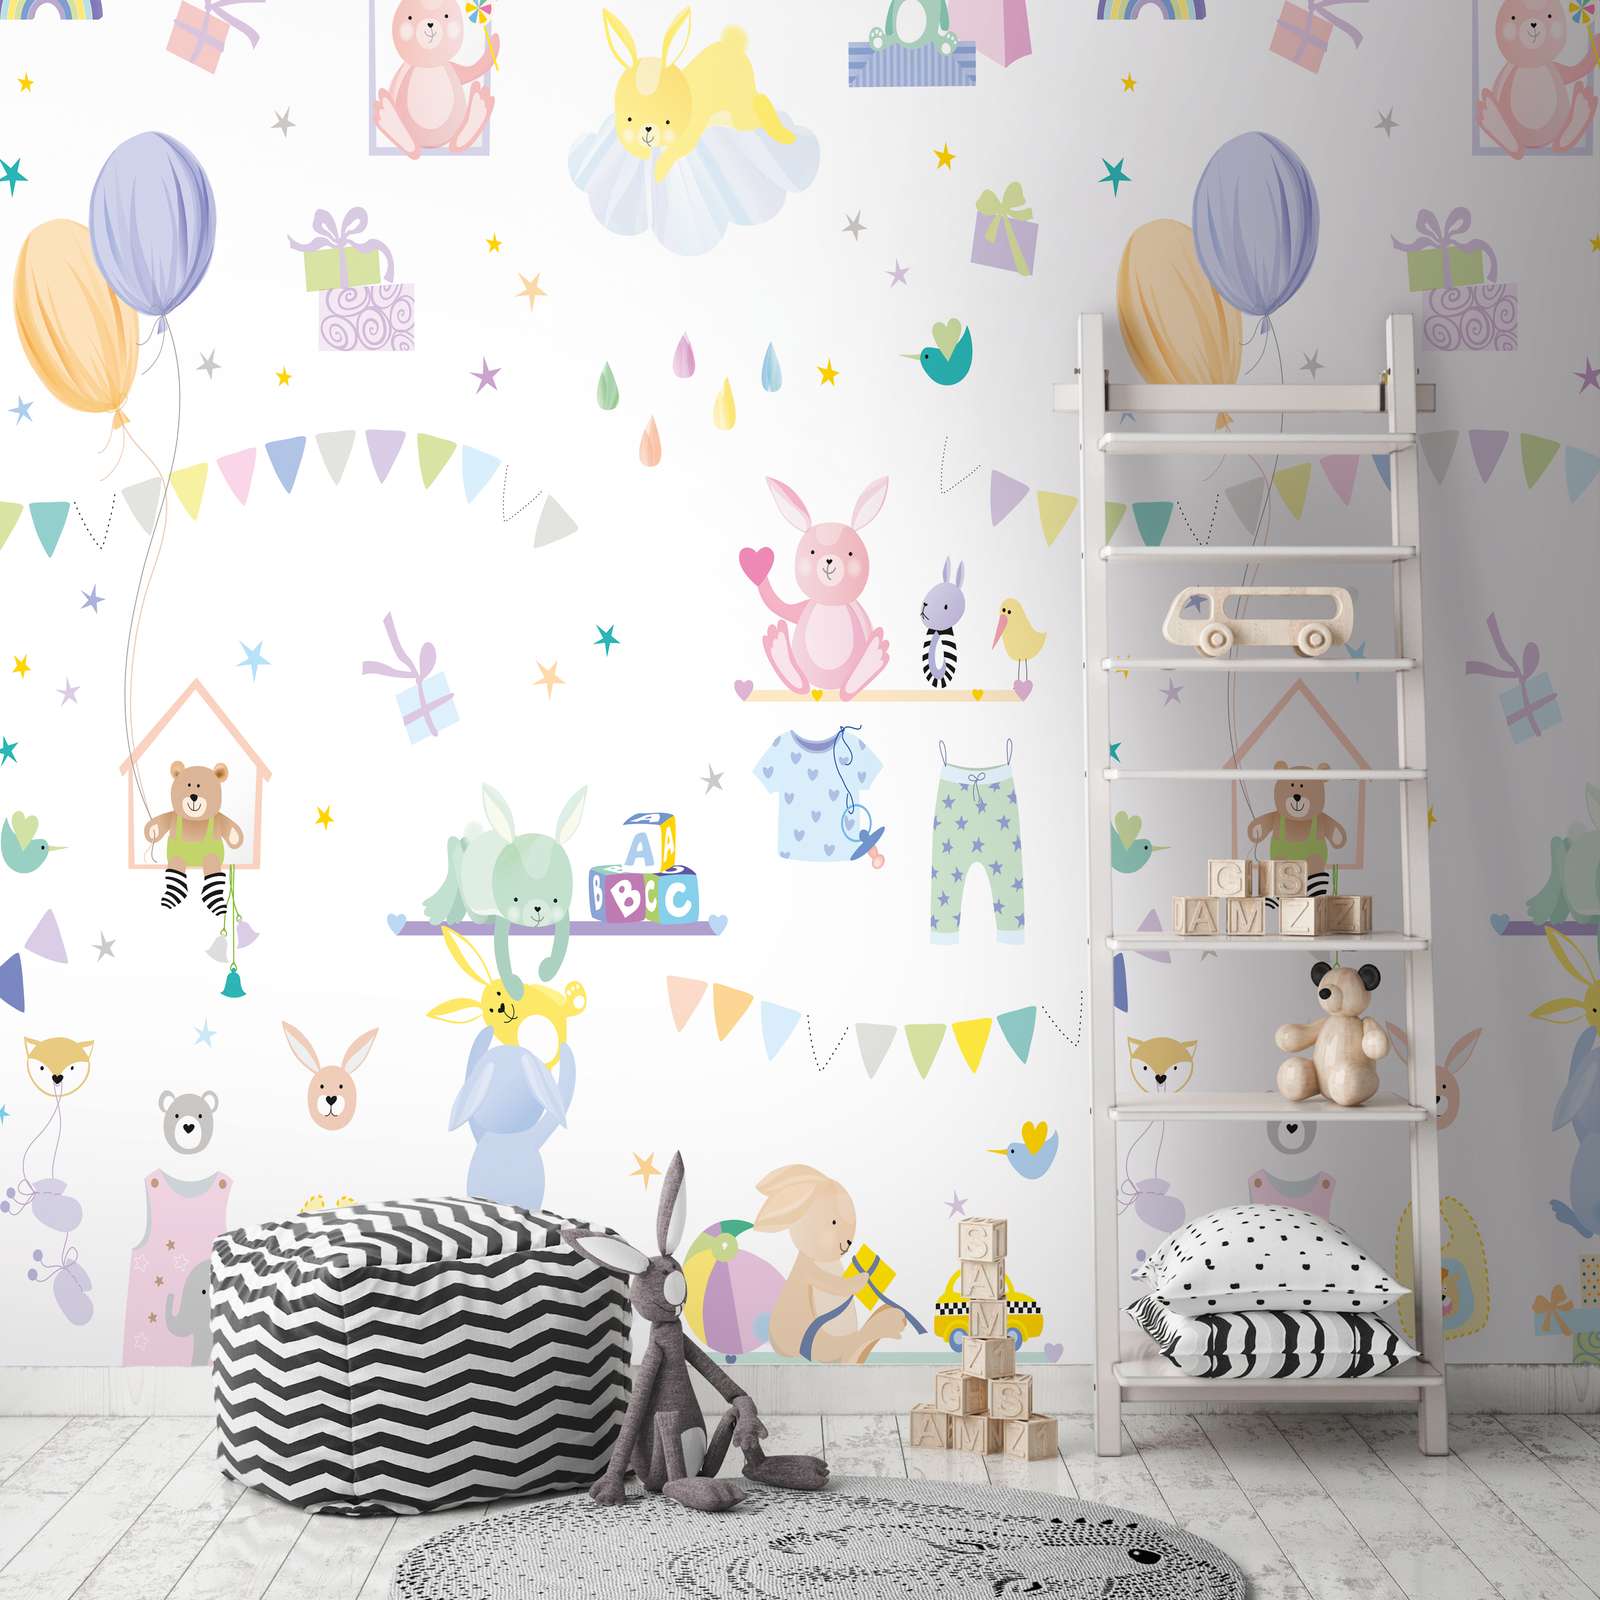             Onderlaag behang met kindermotief met dieren in pastelkleuren - kleurrijk, paars, roze
        